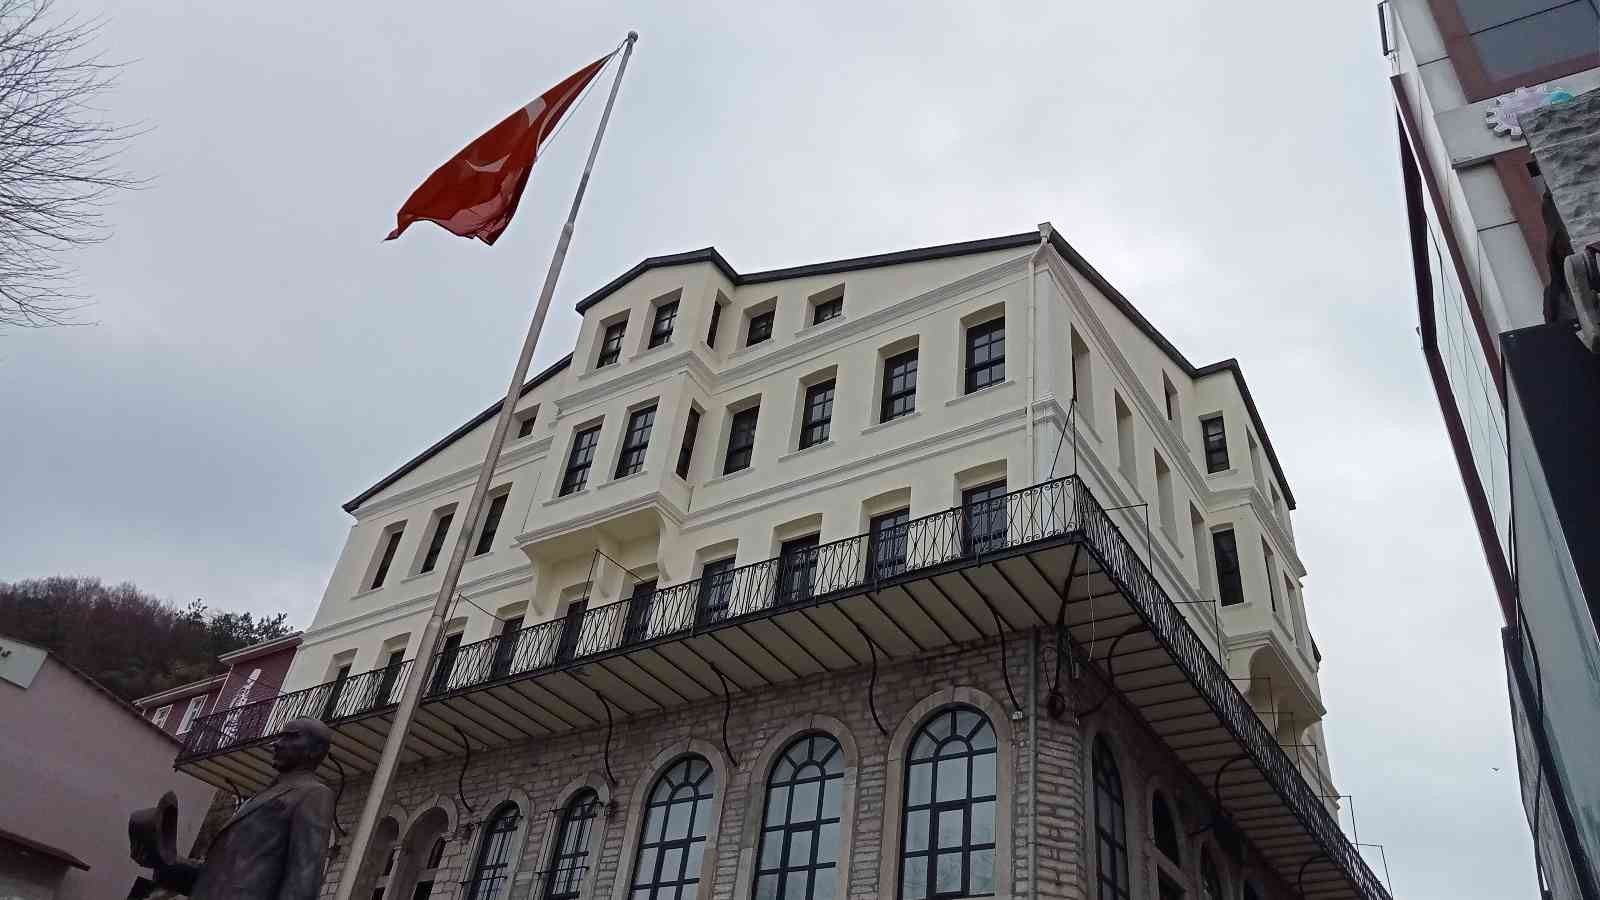 130 yıllık Türk Ocağı müzeye dönüştürüldü #kastamonu